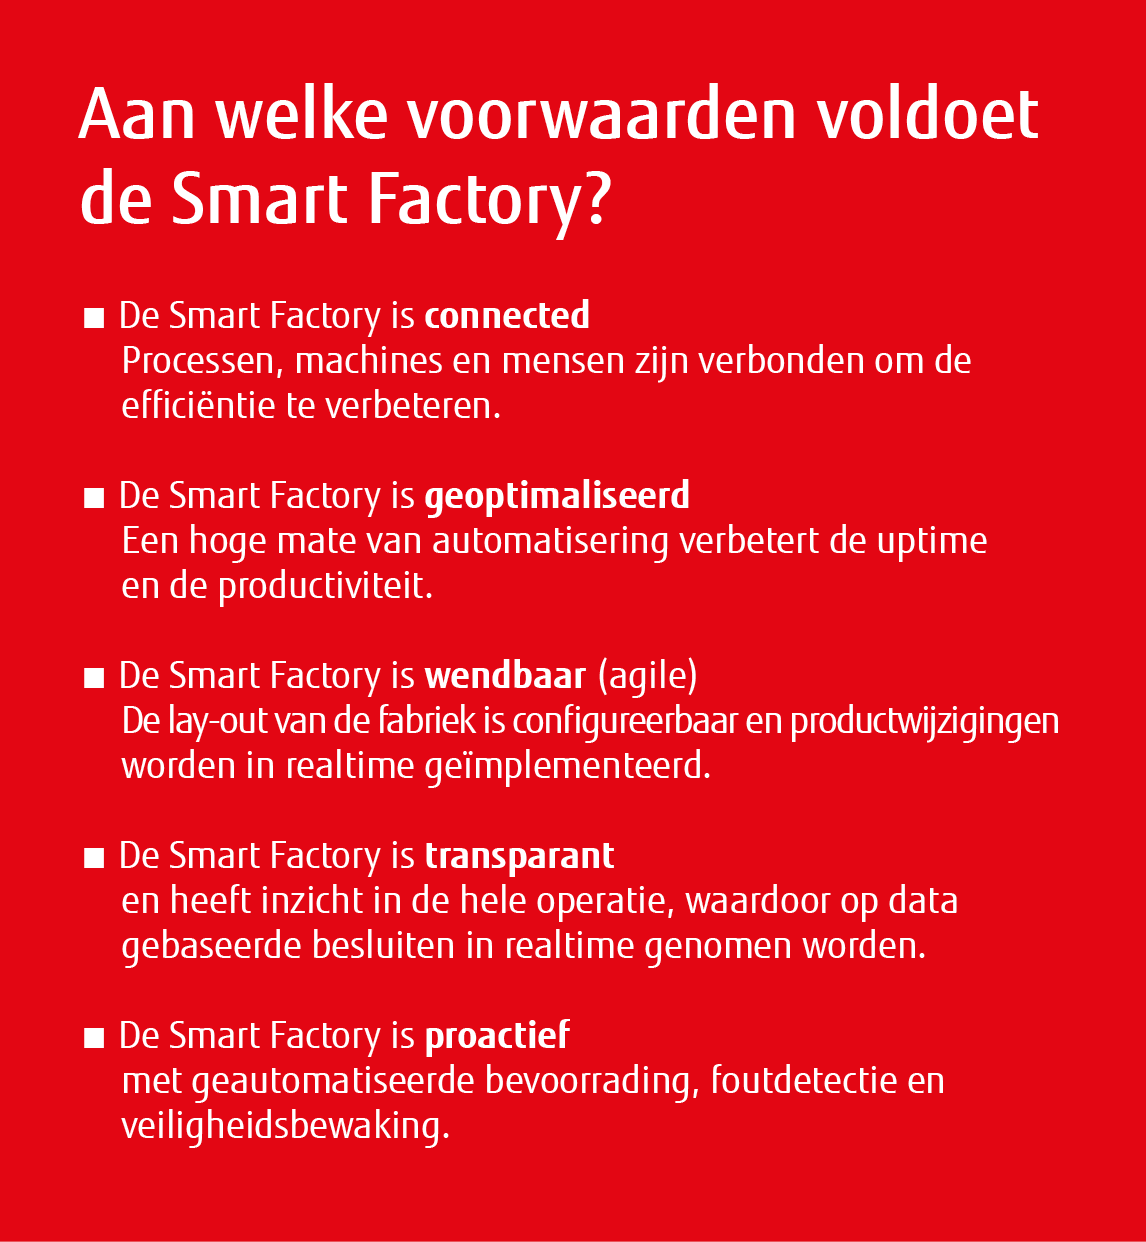 Smart Factory_voordelen